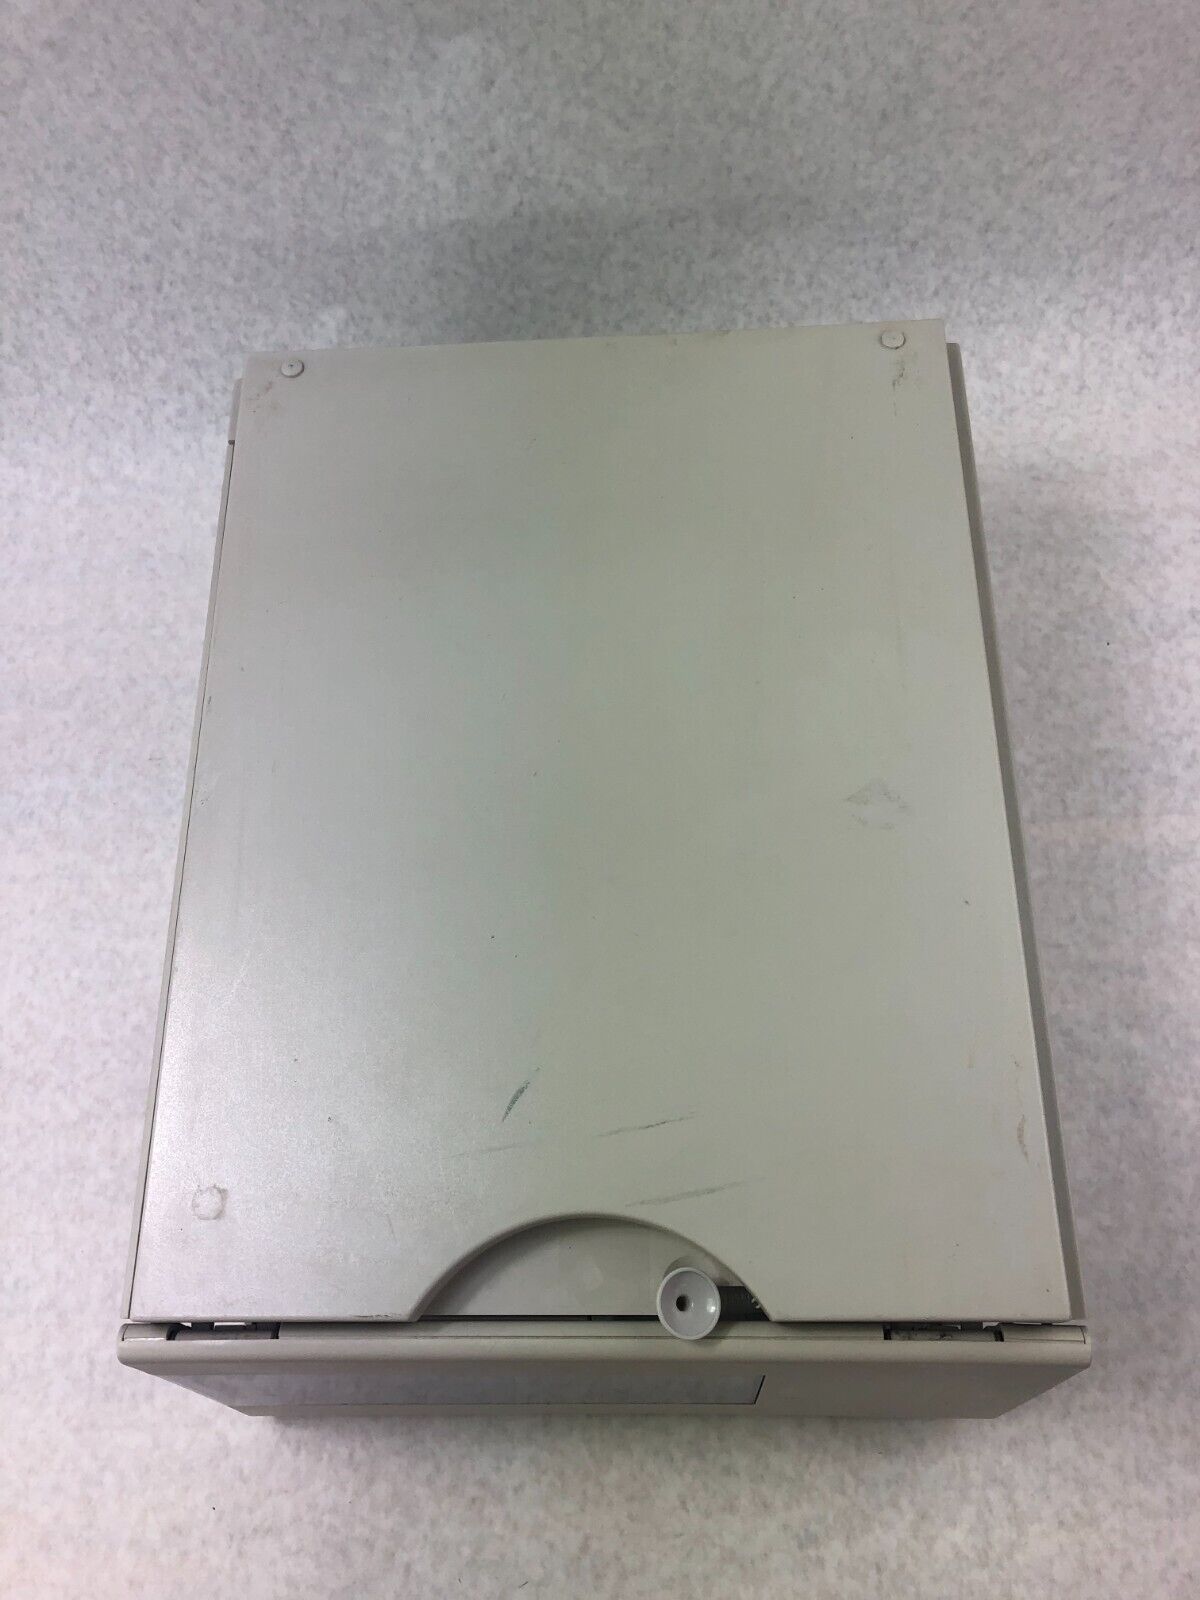 Agilent HP G1367A 1100 Series HPLC WPALS Well Plate Autosampler DE21001913